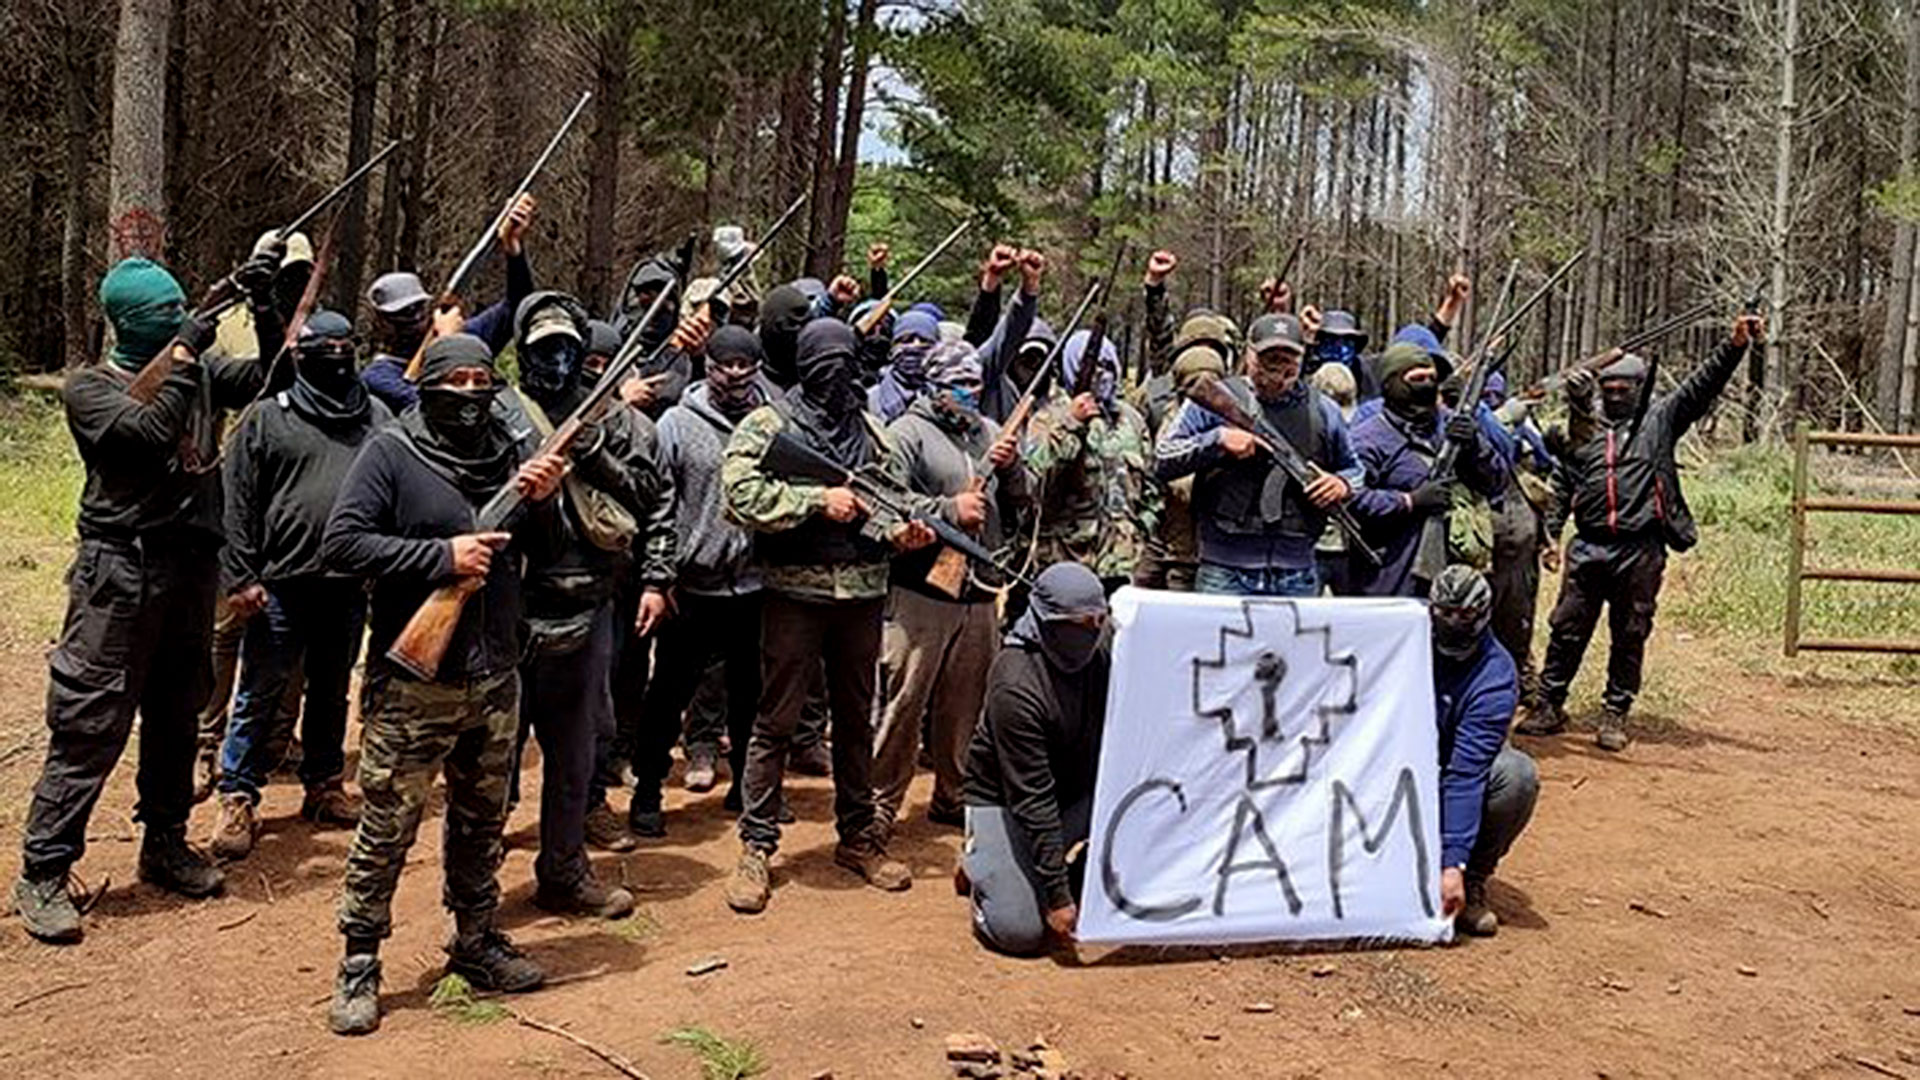 La CAM es uno de los cuatro principales grupos que opera al sur de Chile.